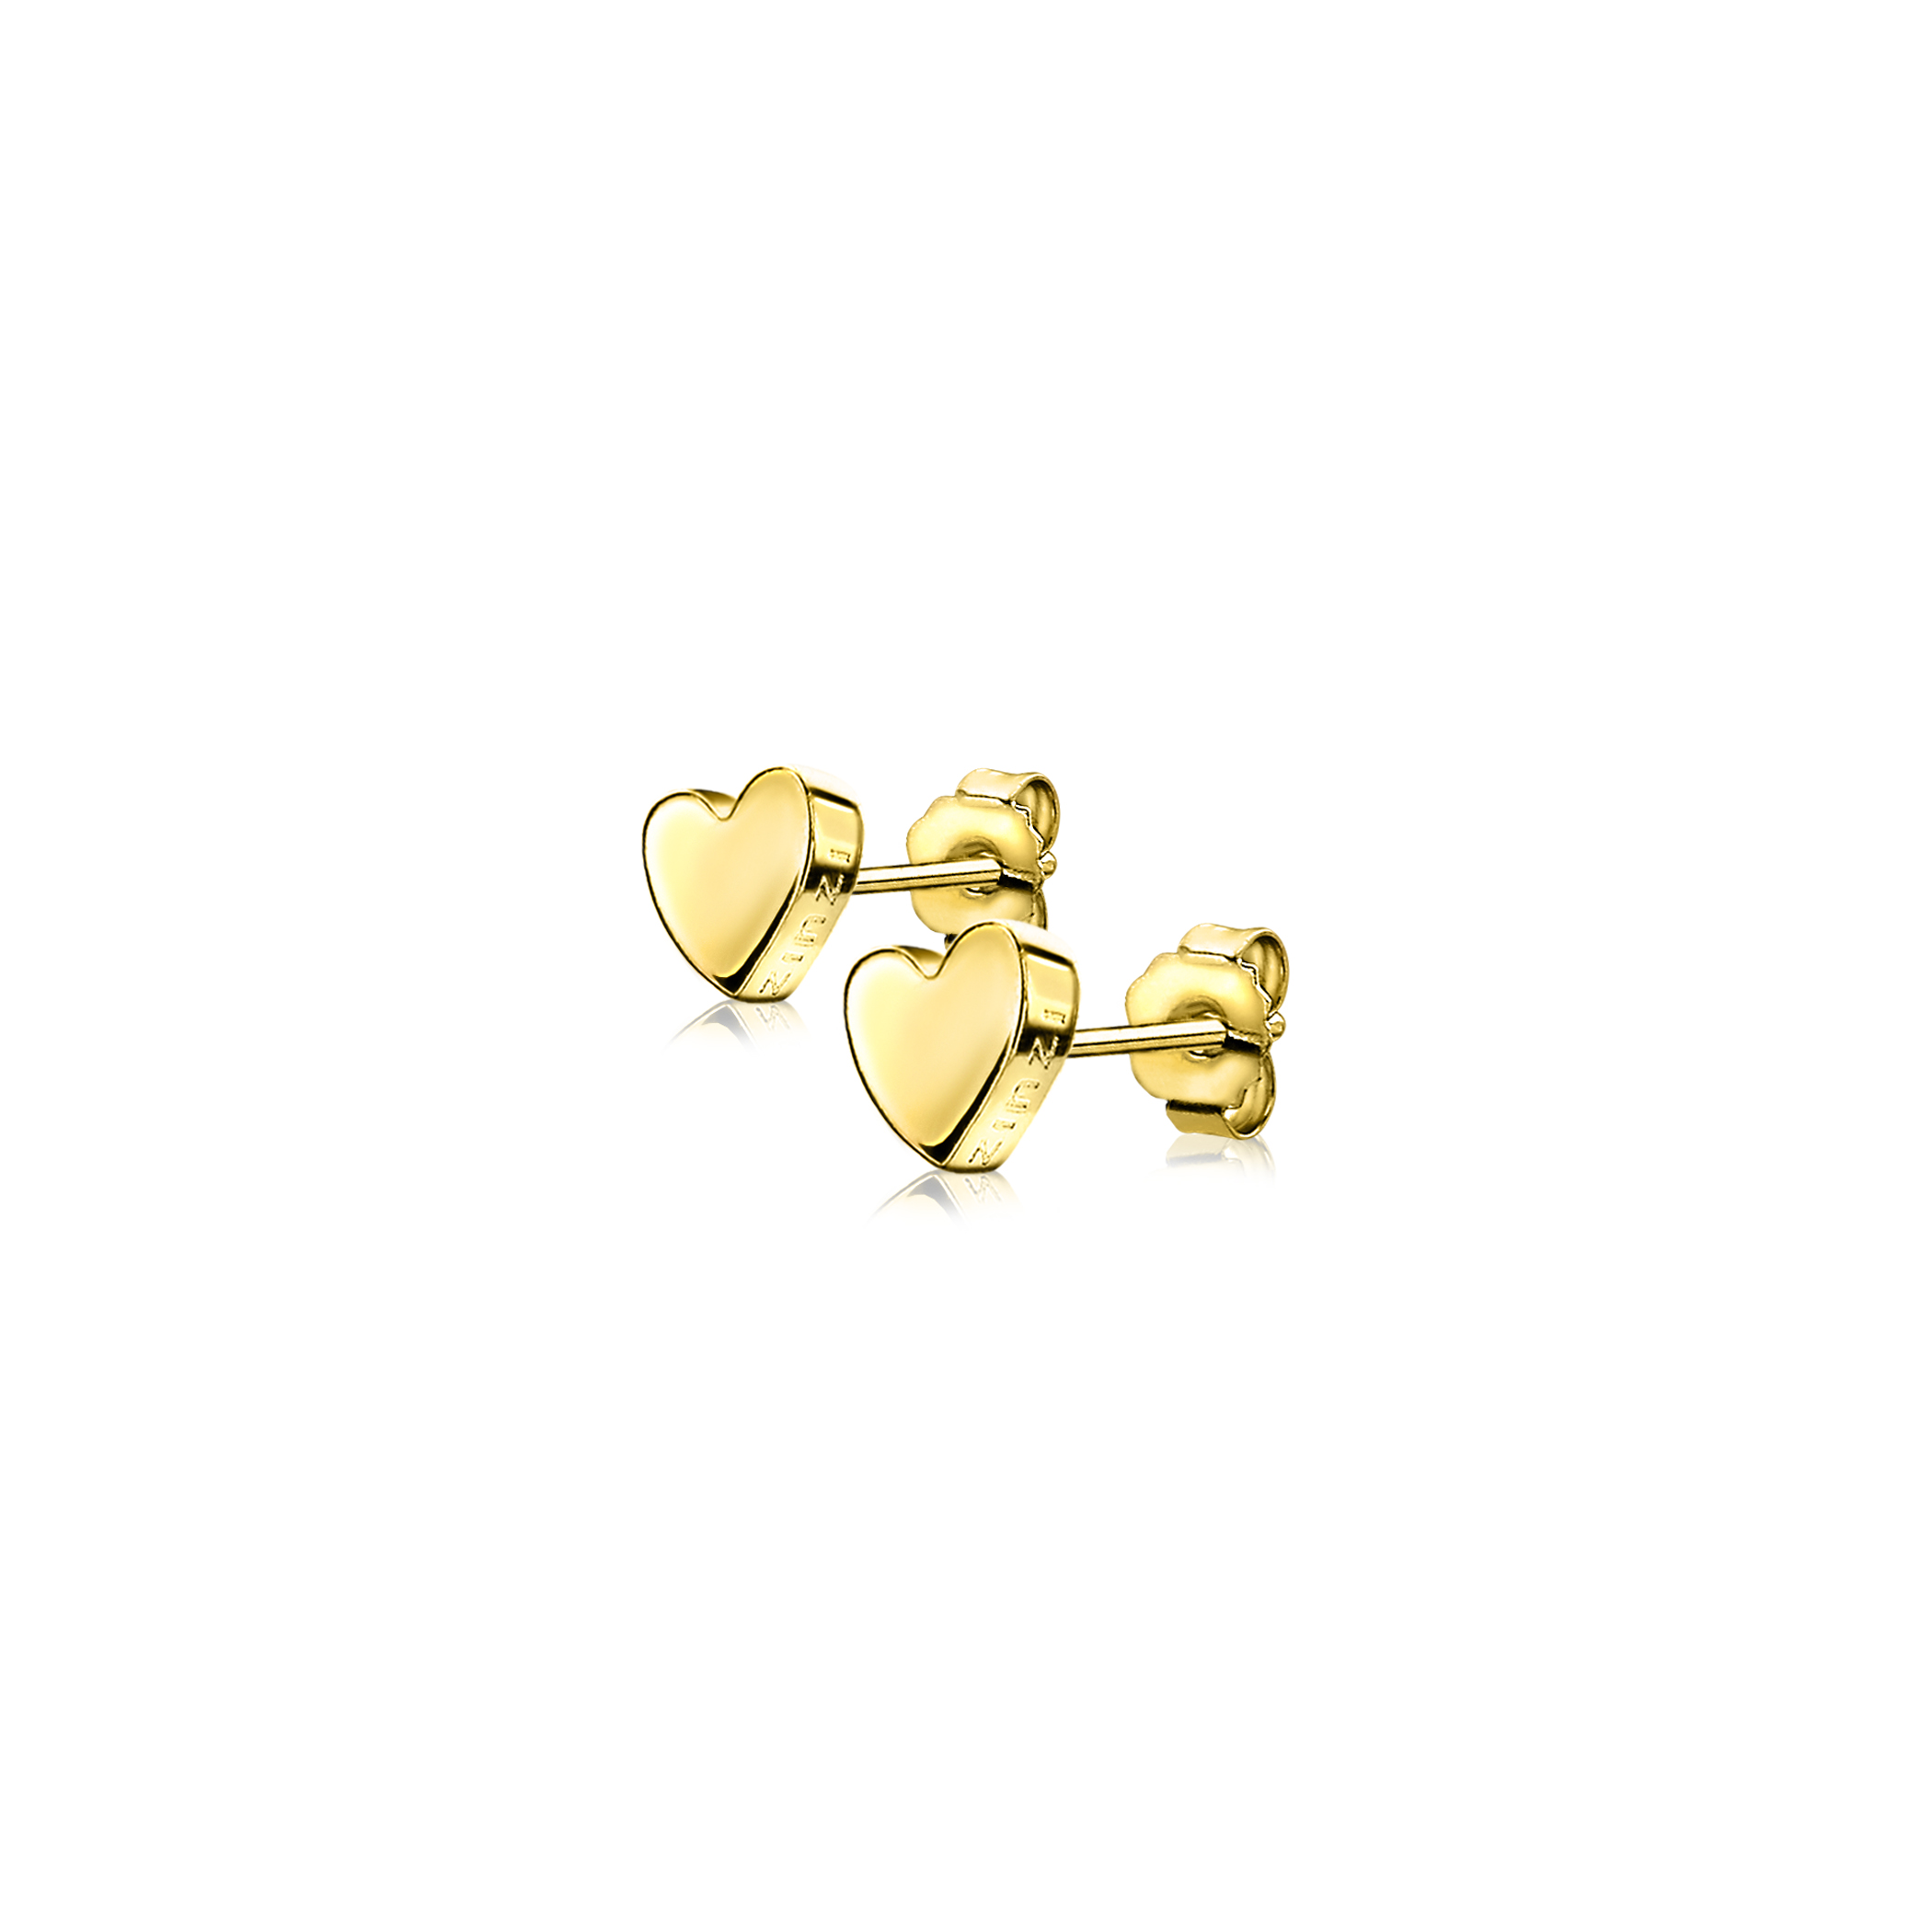 6mm ZINZI Gold Plated Sterling Silver Stud Earrings Heart ZIO1378G